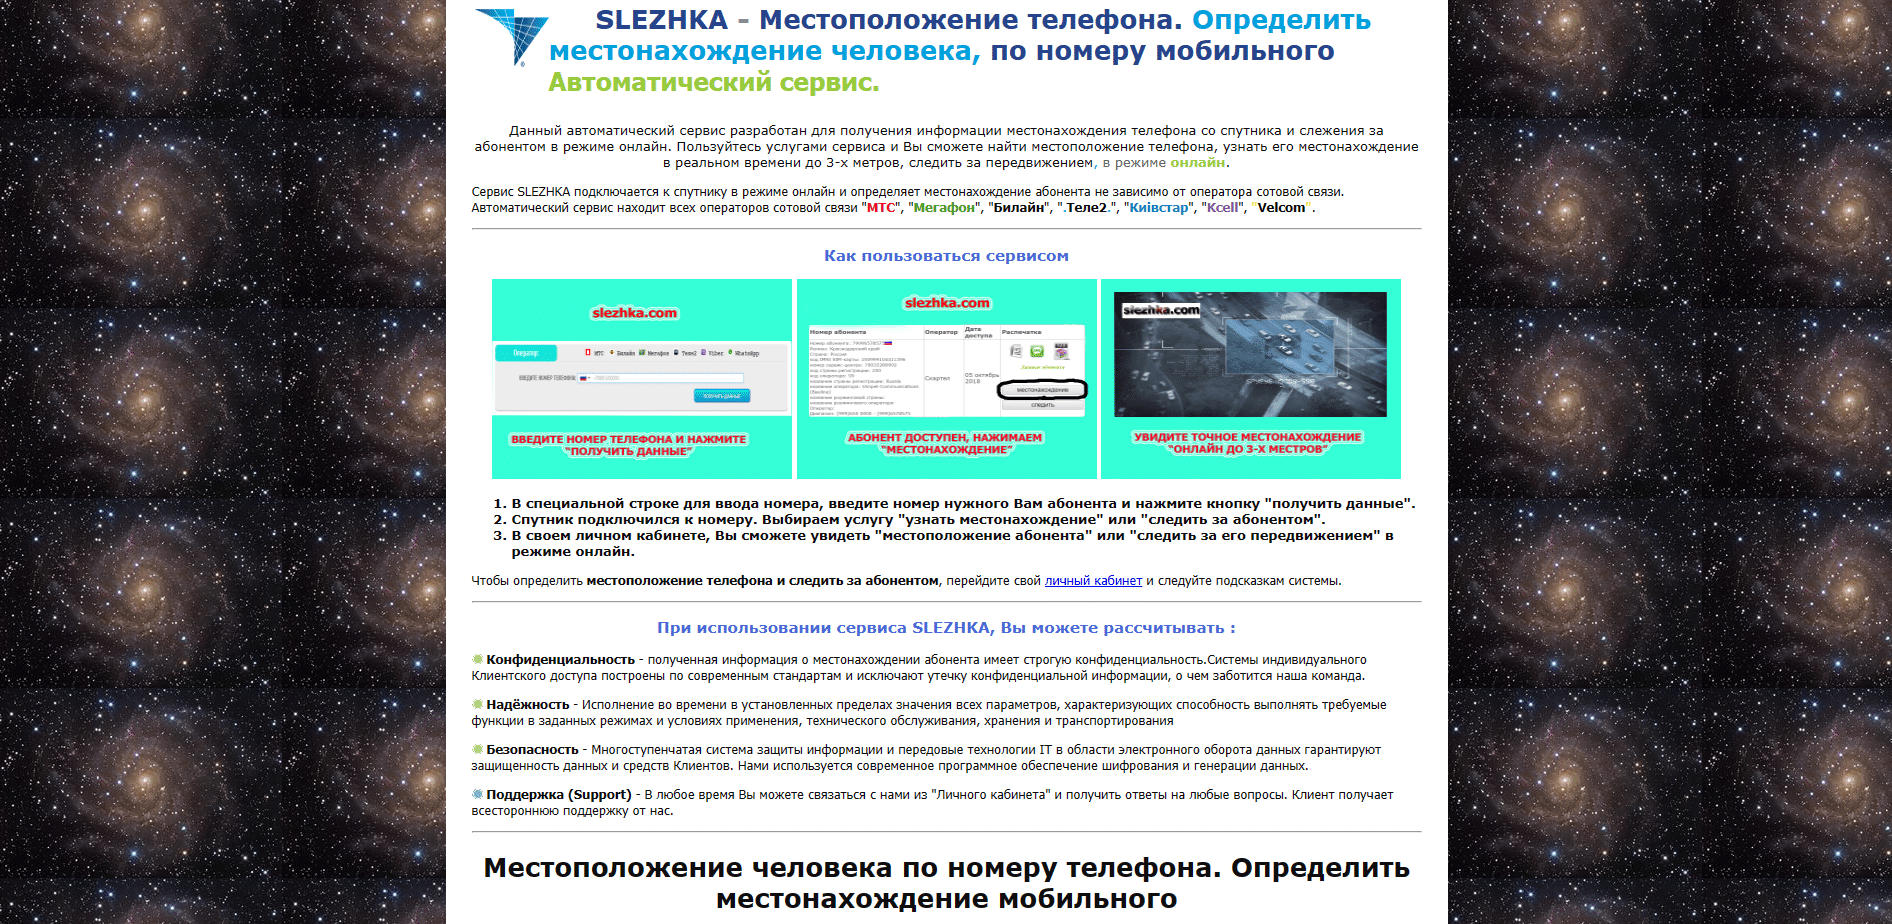 SLEZHKA – сервис для определения местоположения, отзывы о проекте. Обман!